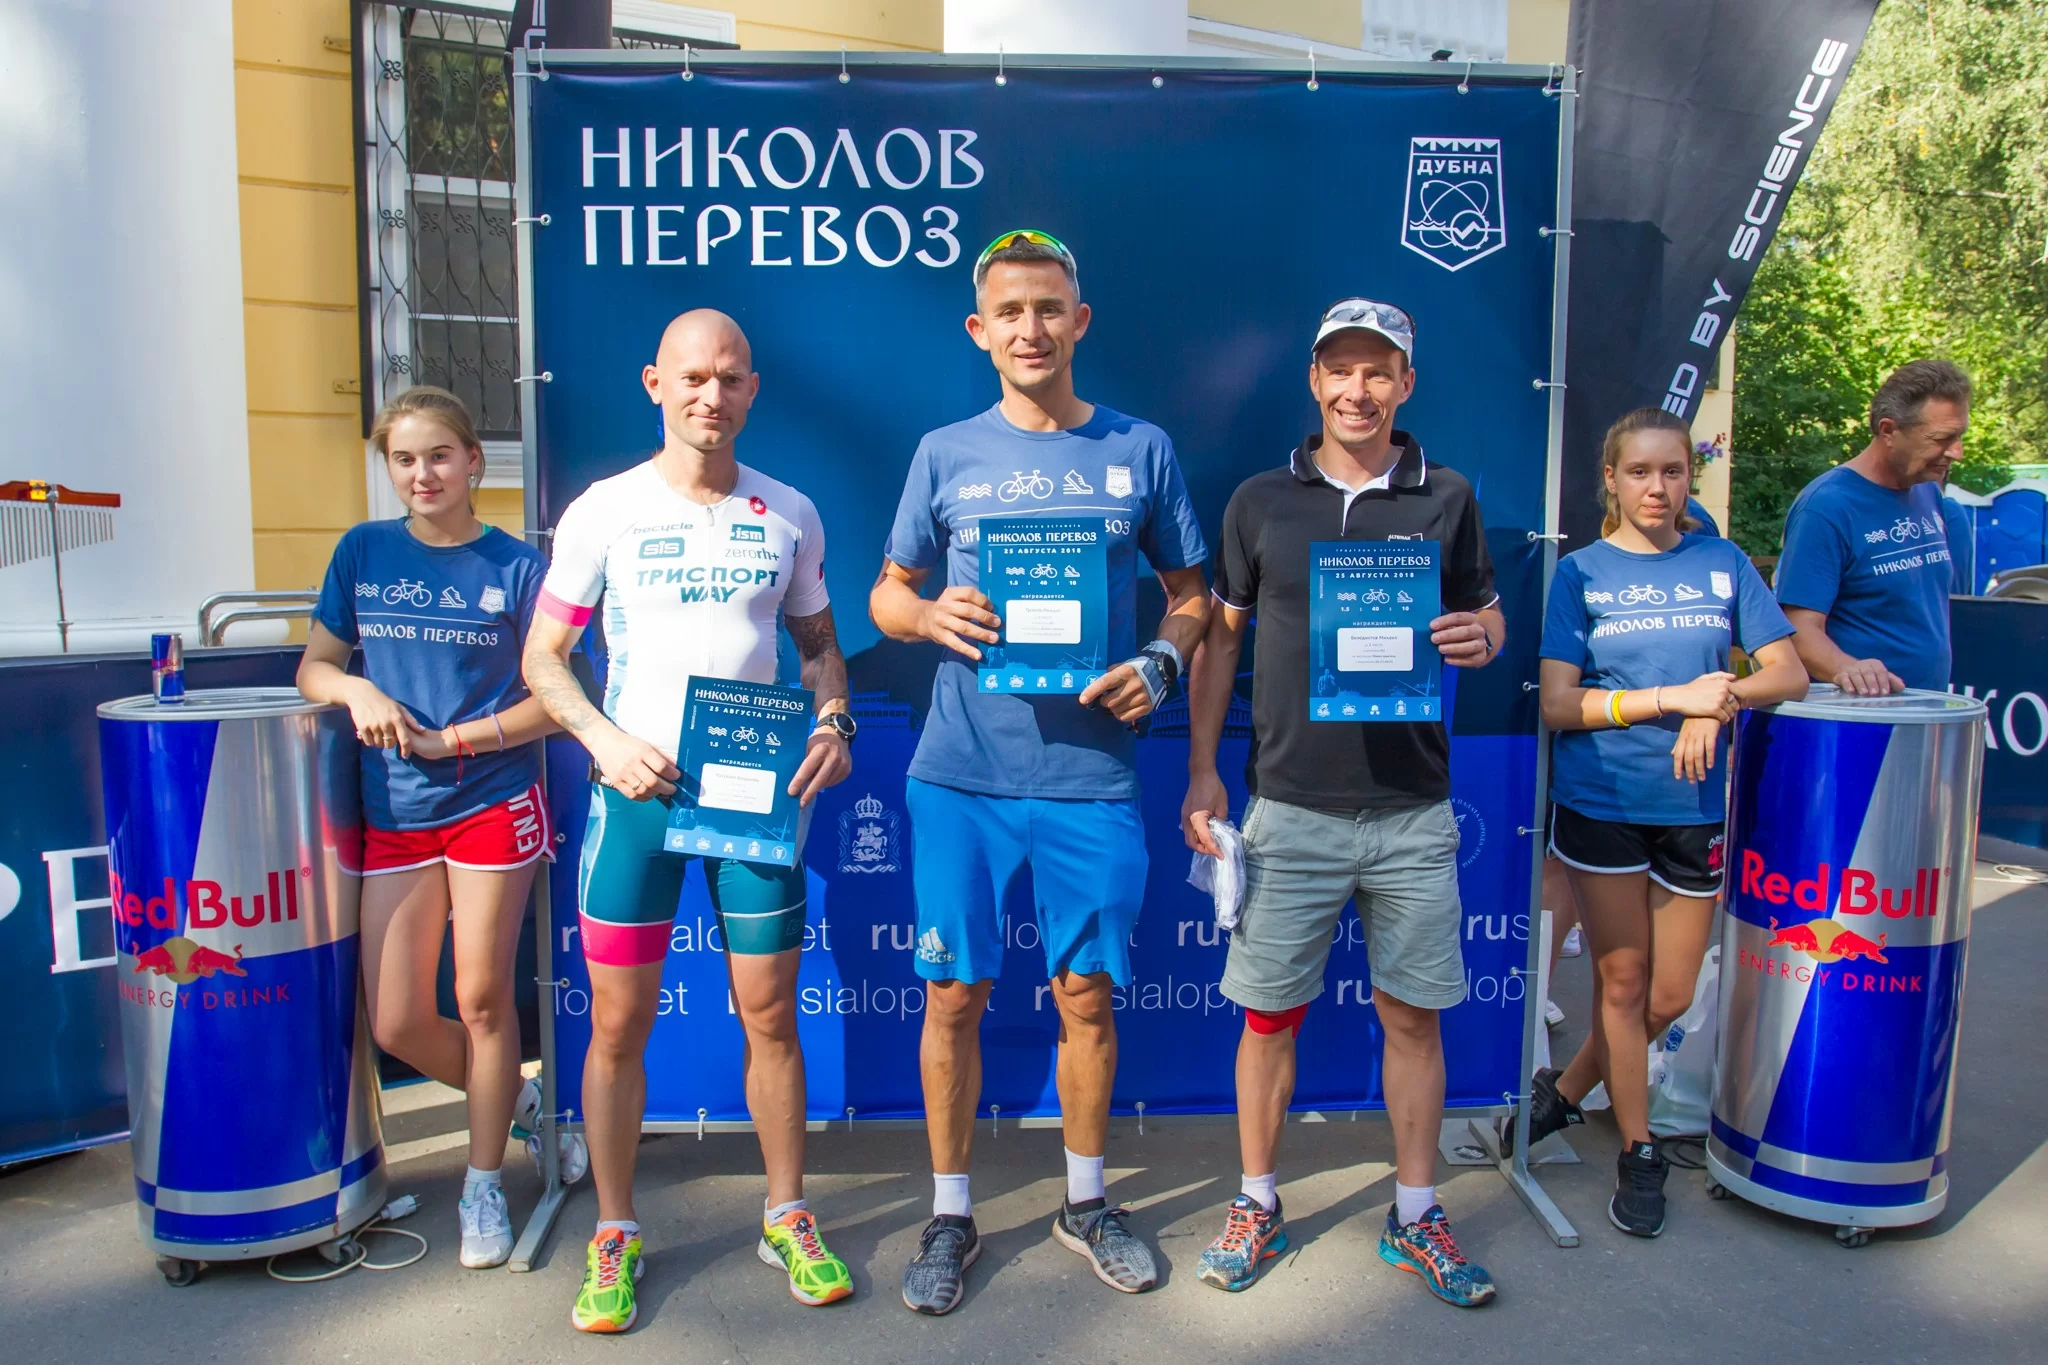 Награждение триатлона "Николов Перевоз" в Дубне